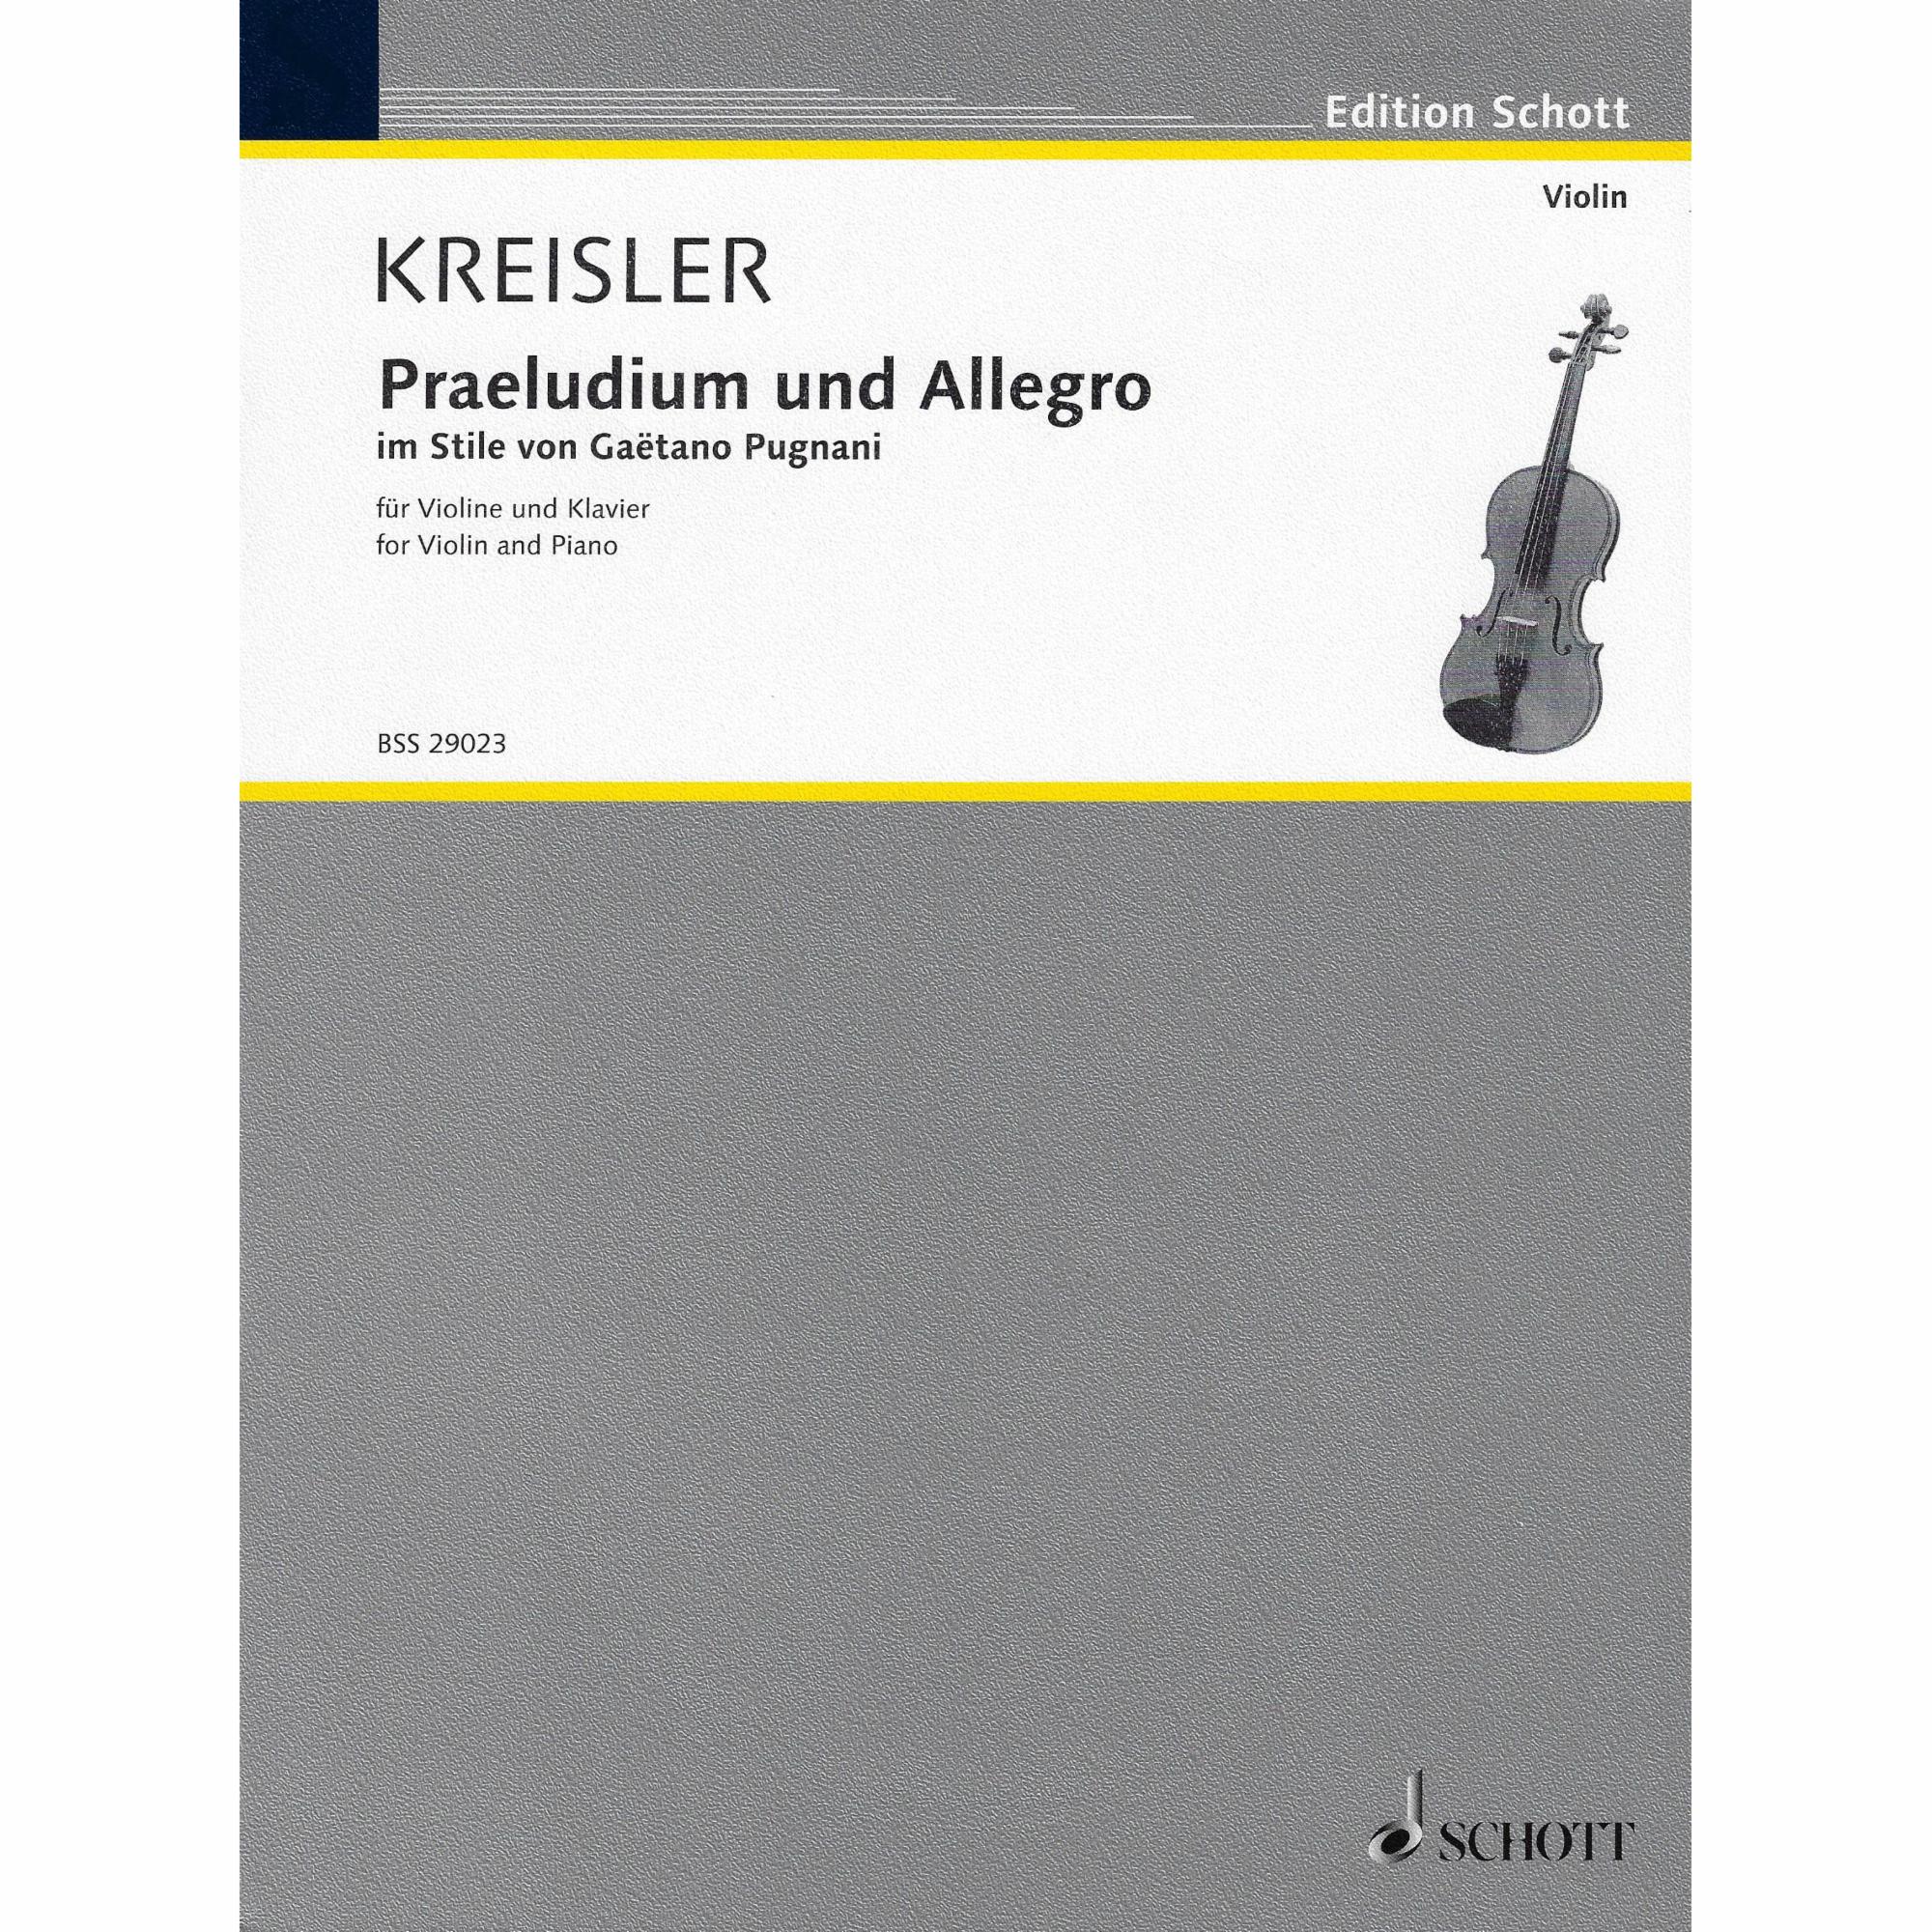 Kreisler -- Praeludium und Allegro for Violin and Piano